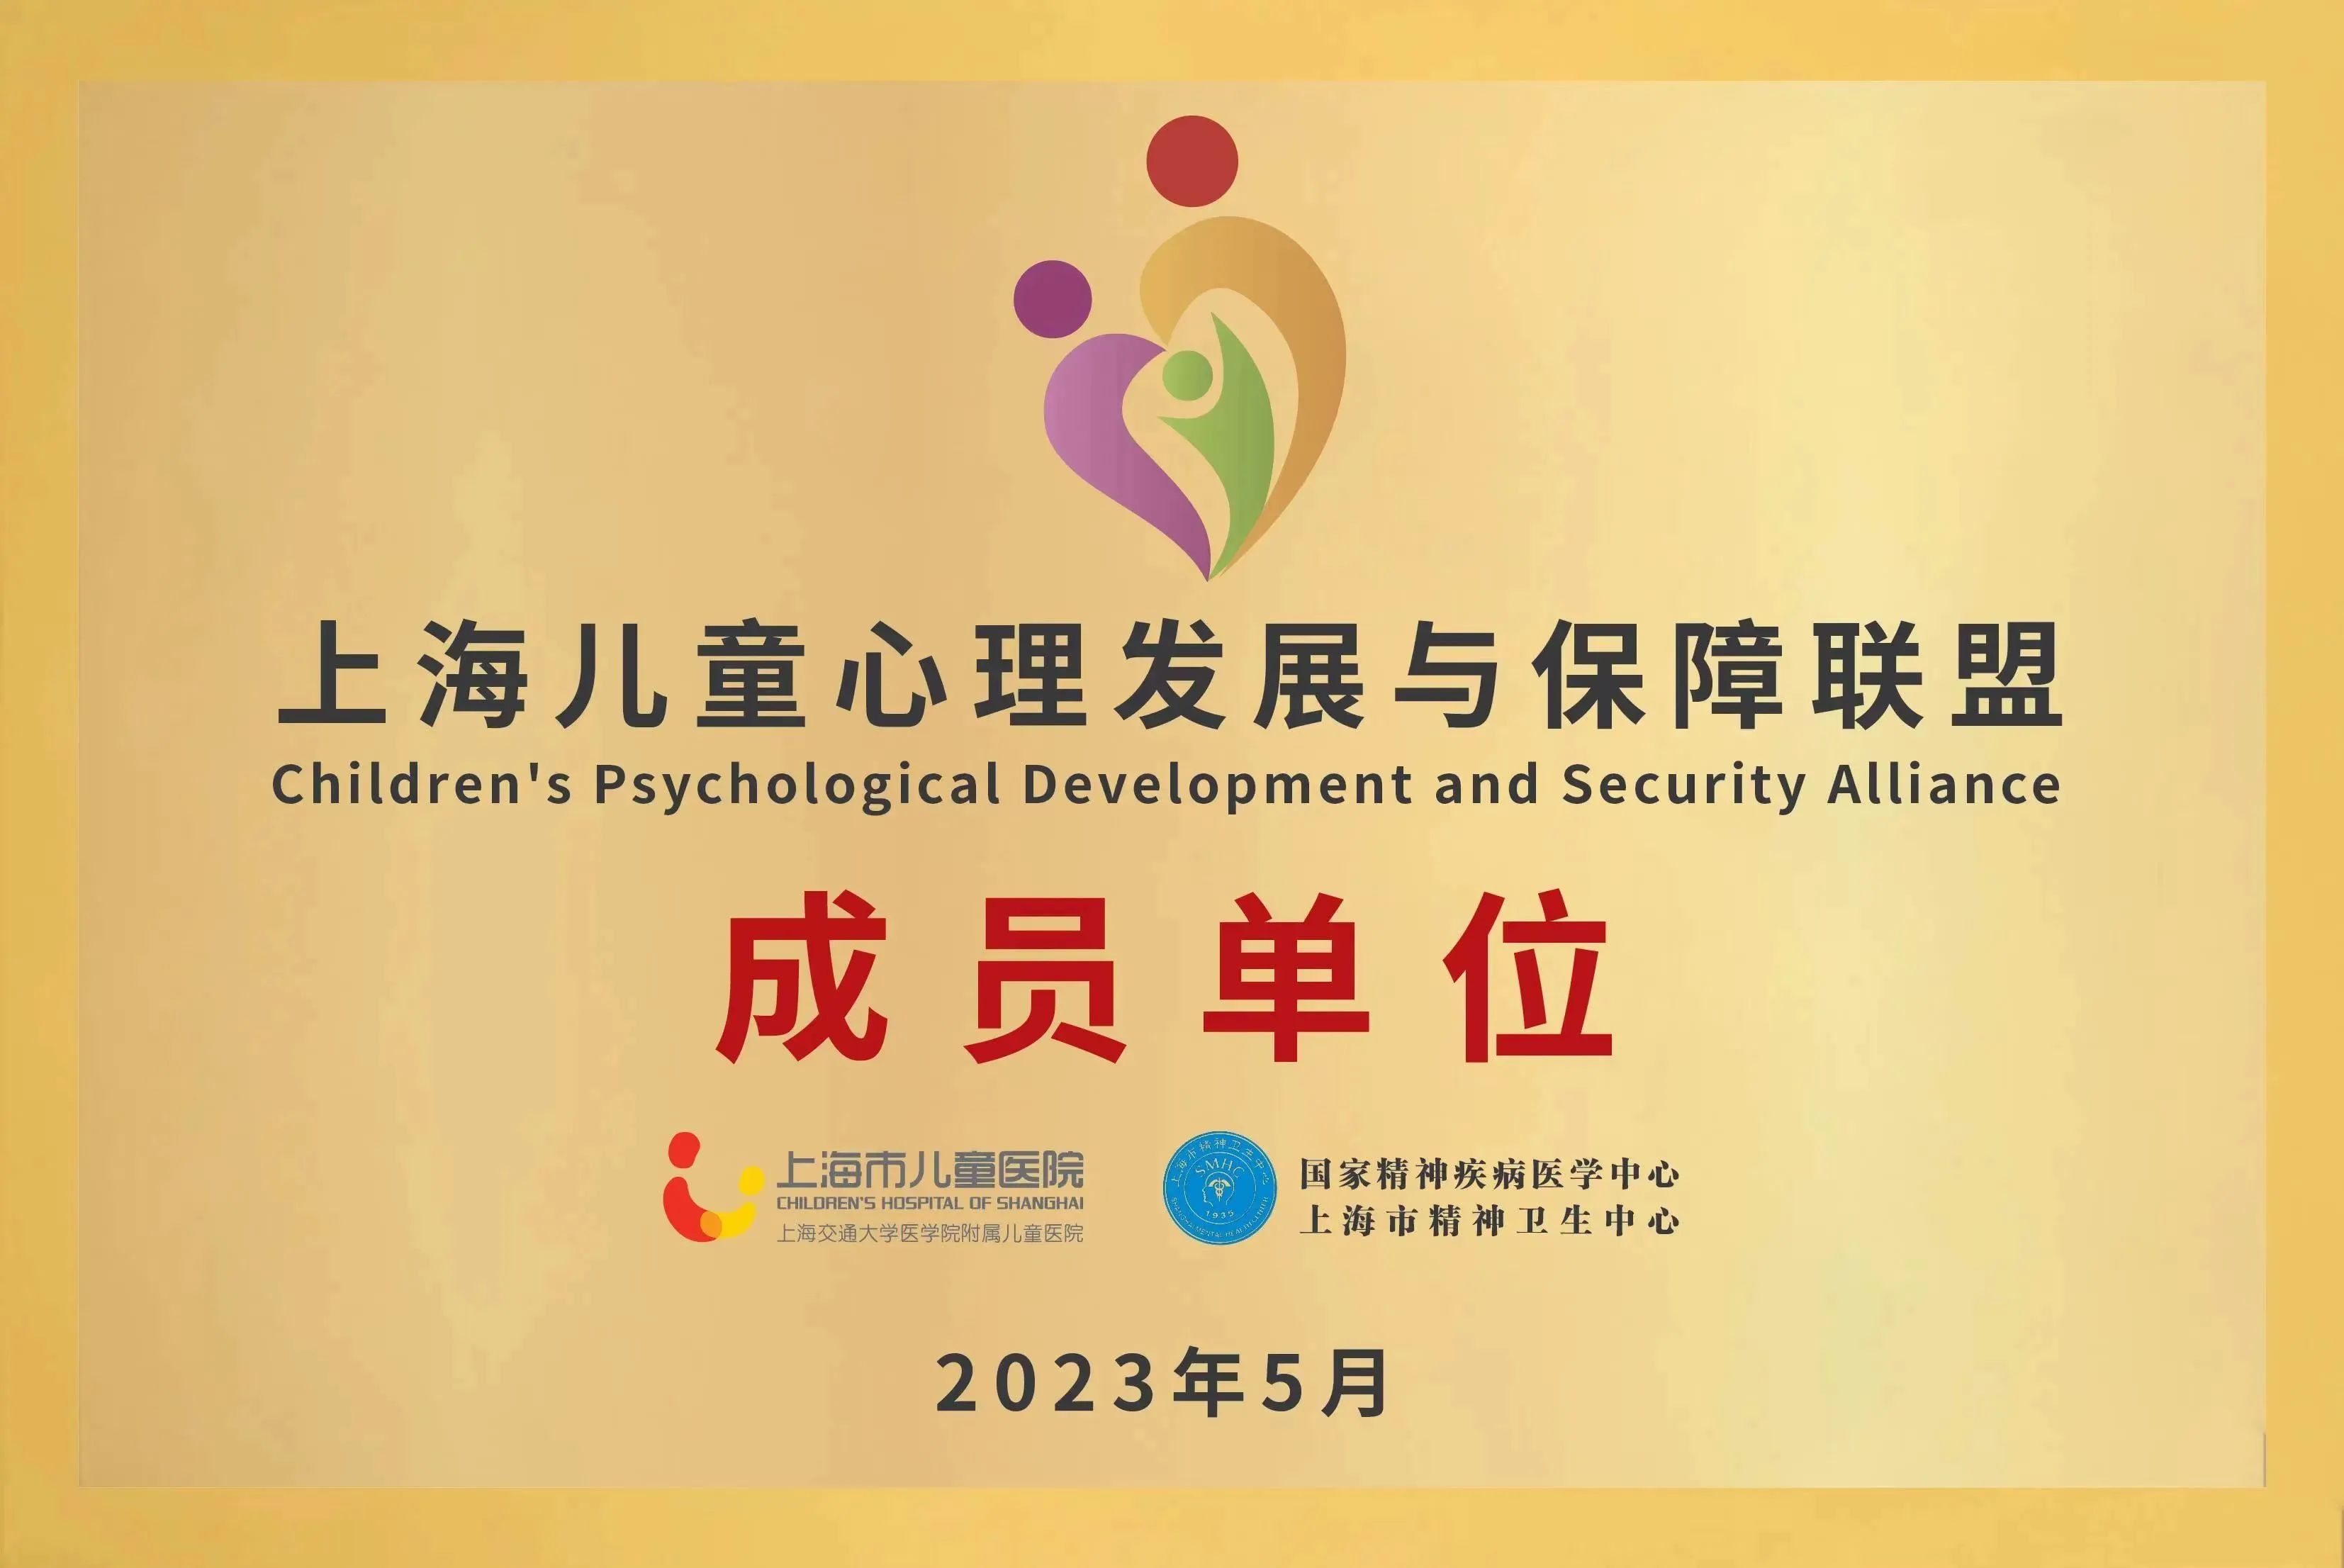 上海儿童心理发展与保障联盟